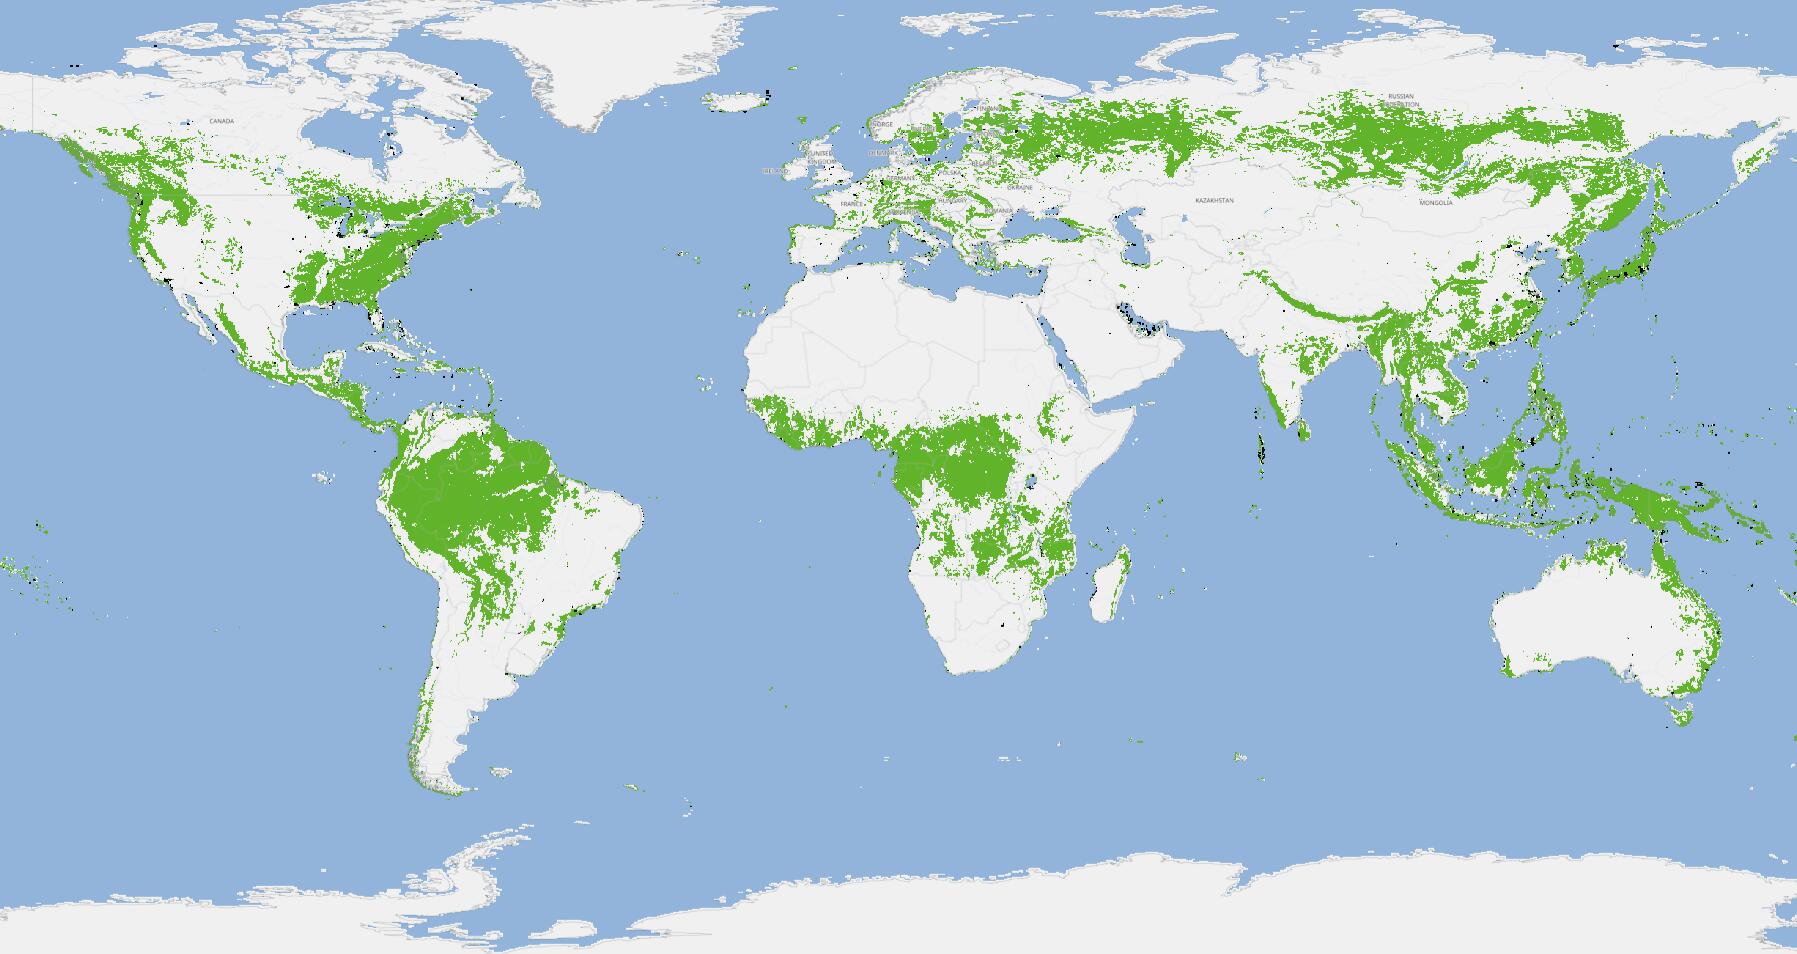 世界热带雨林分布图片